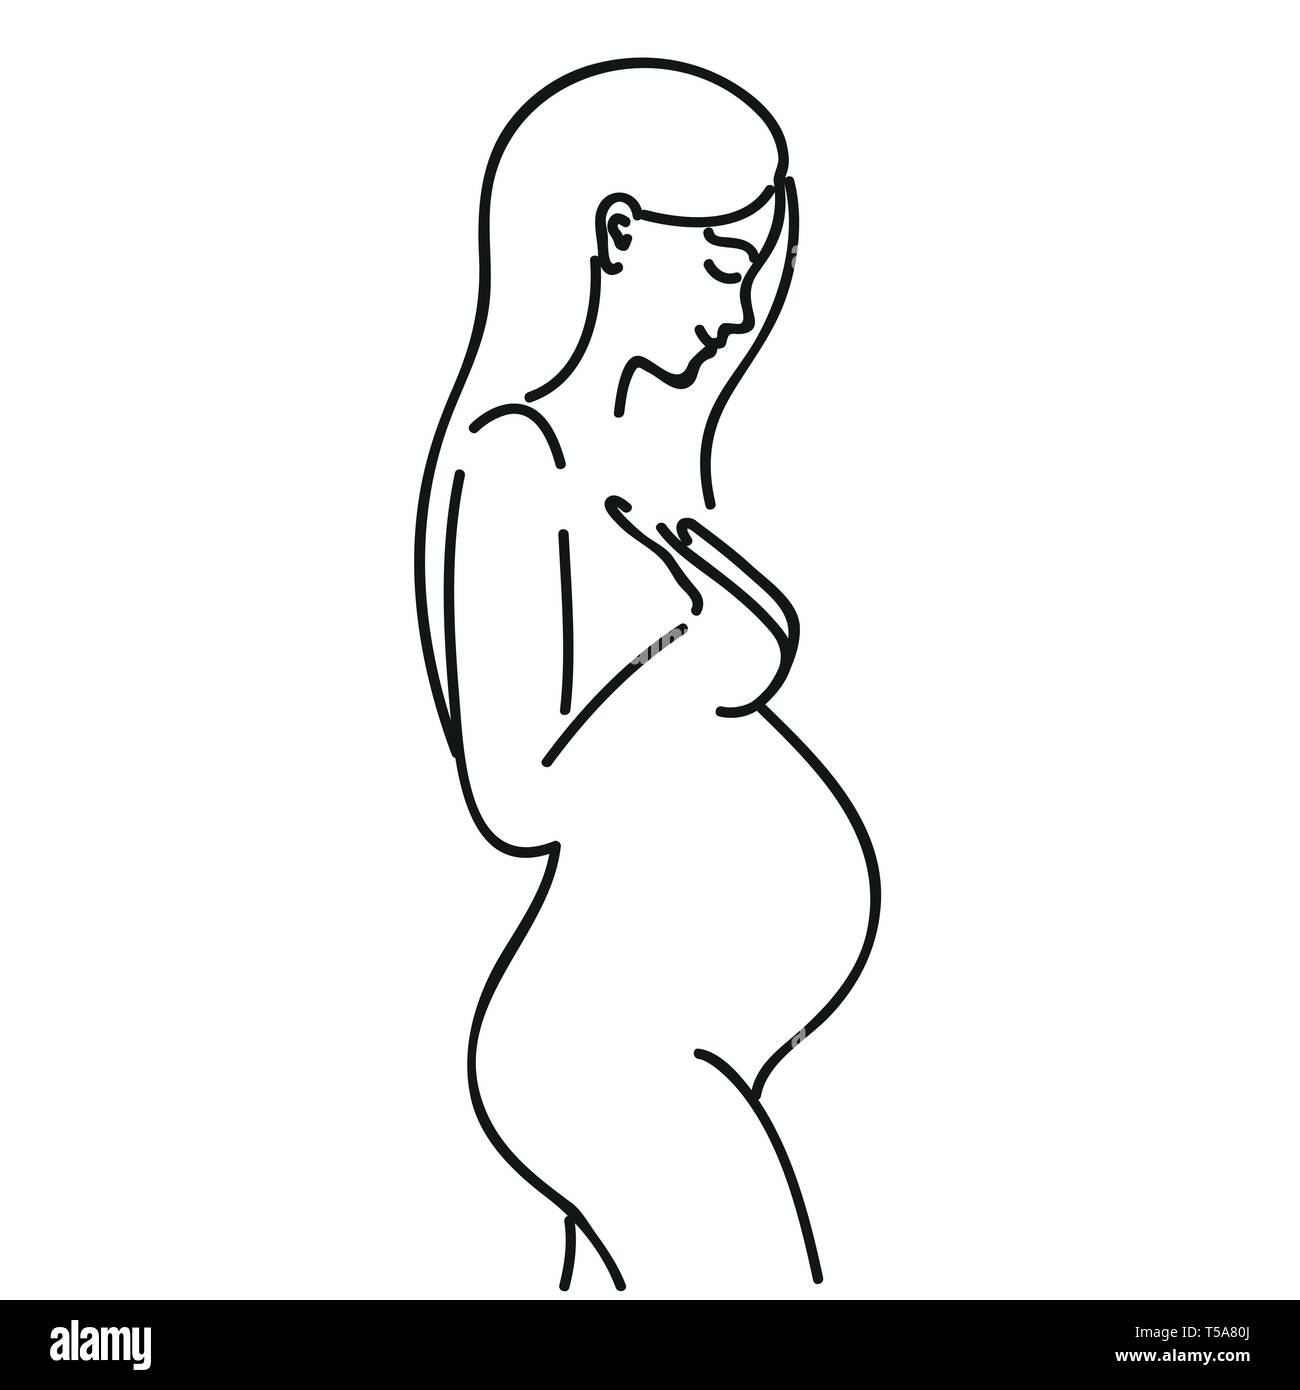 Prengant Frau outline hand Zeichnung auf weißem Hintergrund Vektor-illustration EPS 10 isoliert Stock Vektor